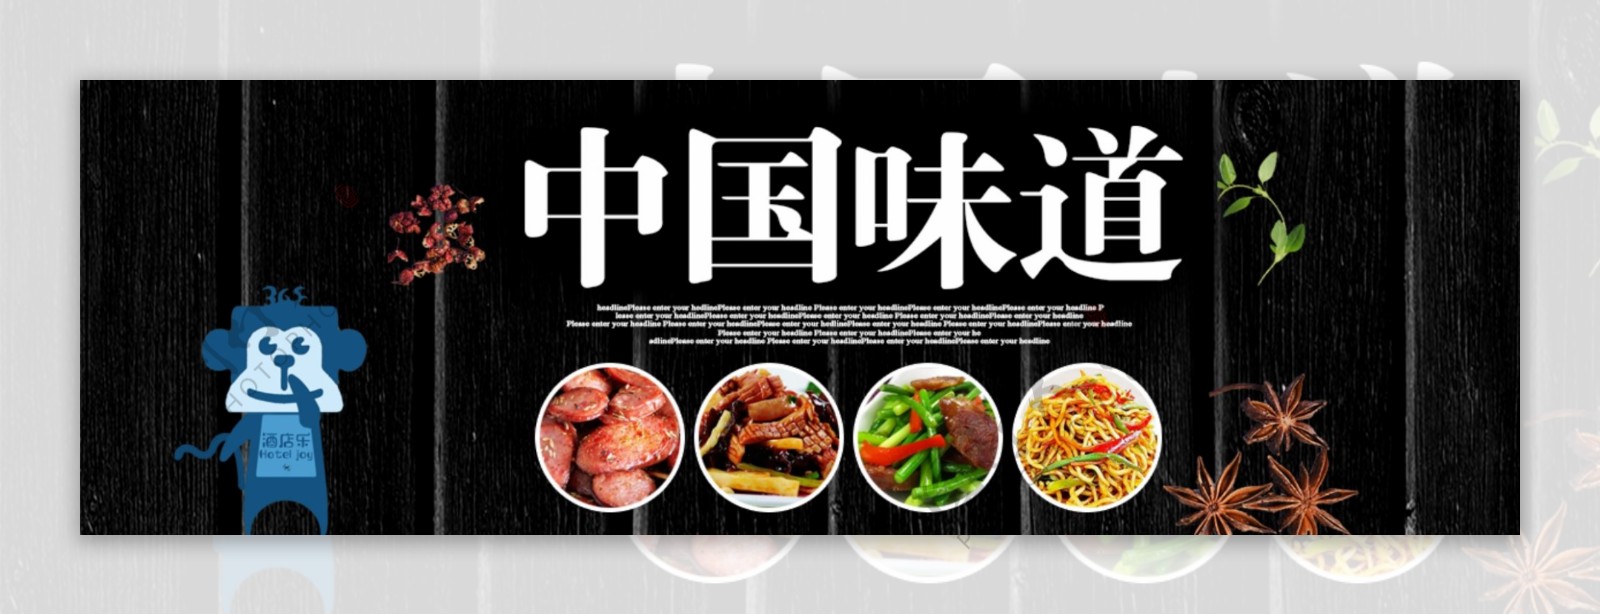 中国味道美食banner